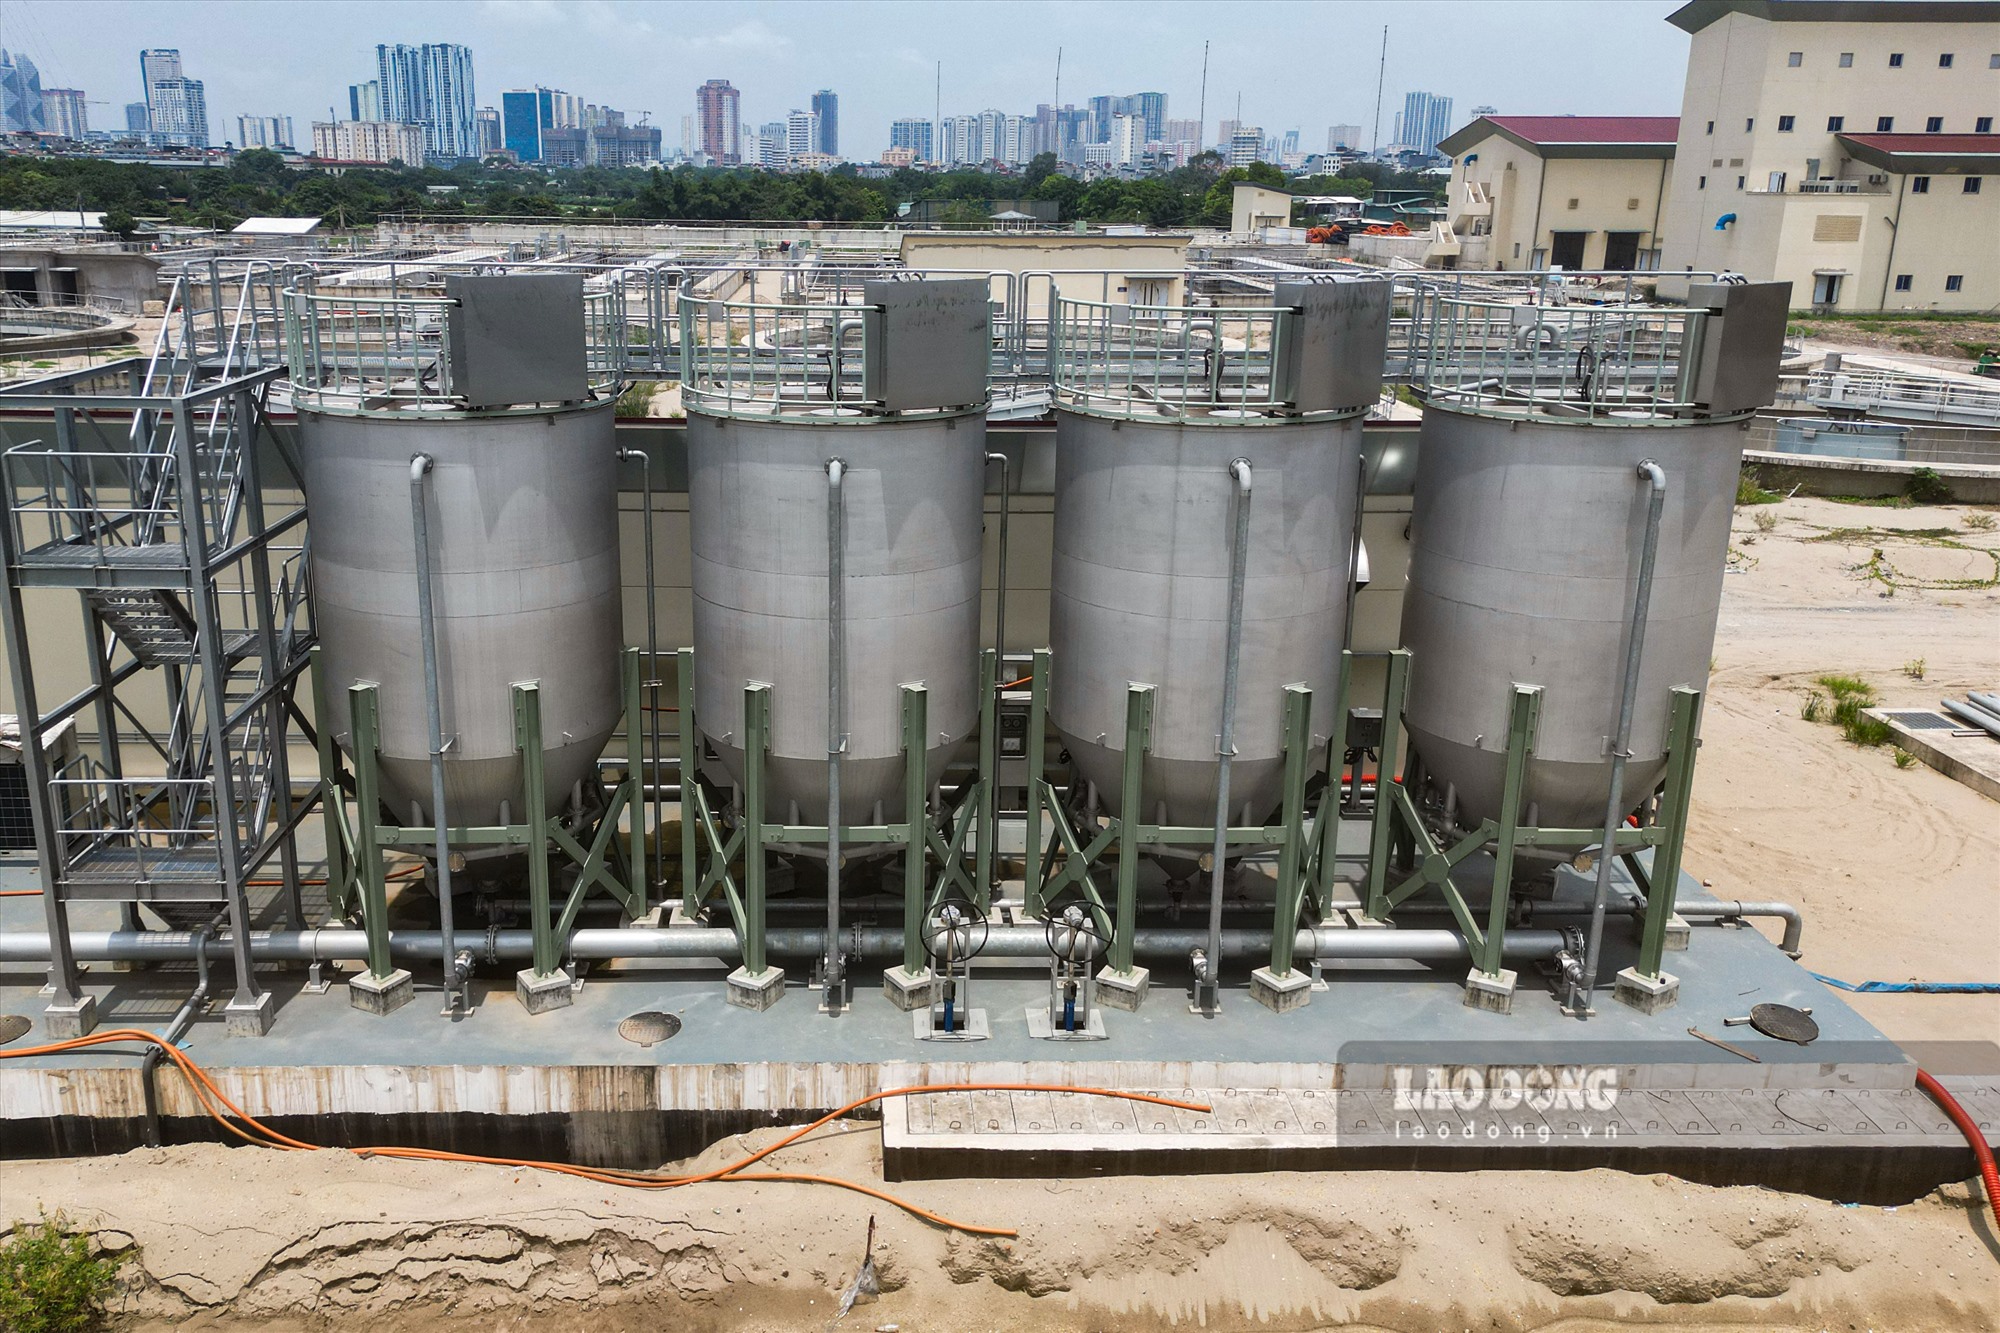 Giám đốc Ban Quản lý dự án đầu tư xây dựng công trình Hạ tầng kỹ thuật và Nông nghiệp TP Hà Nội -Hoàng Trọng Tùng - cho biết: Dự án xây dựng hệ thống xử lý nước thải Yên Xá công suất 270.000 m3/ngày đêm, bao gồm 4 gói thầu chính.